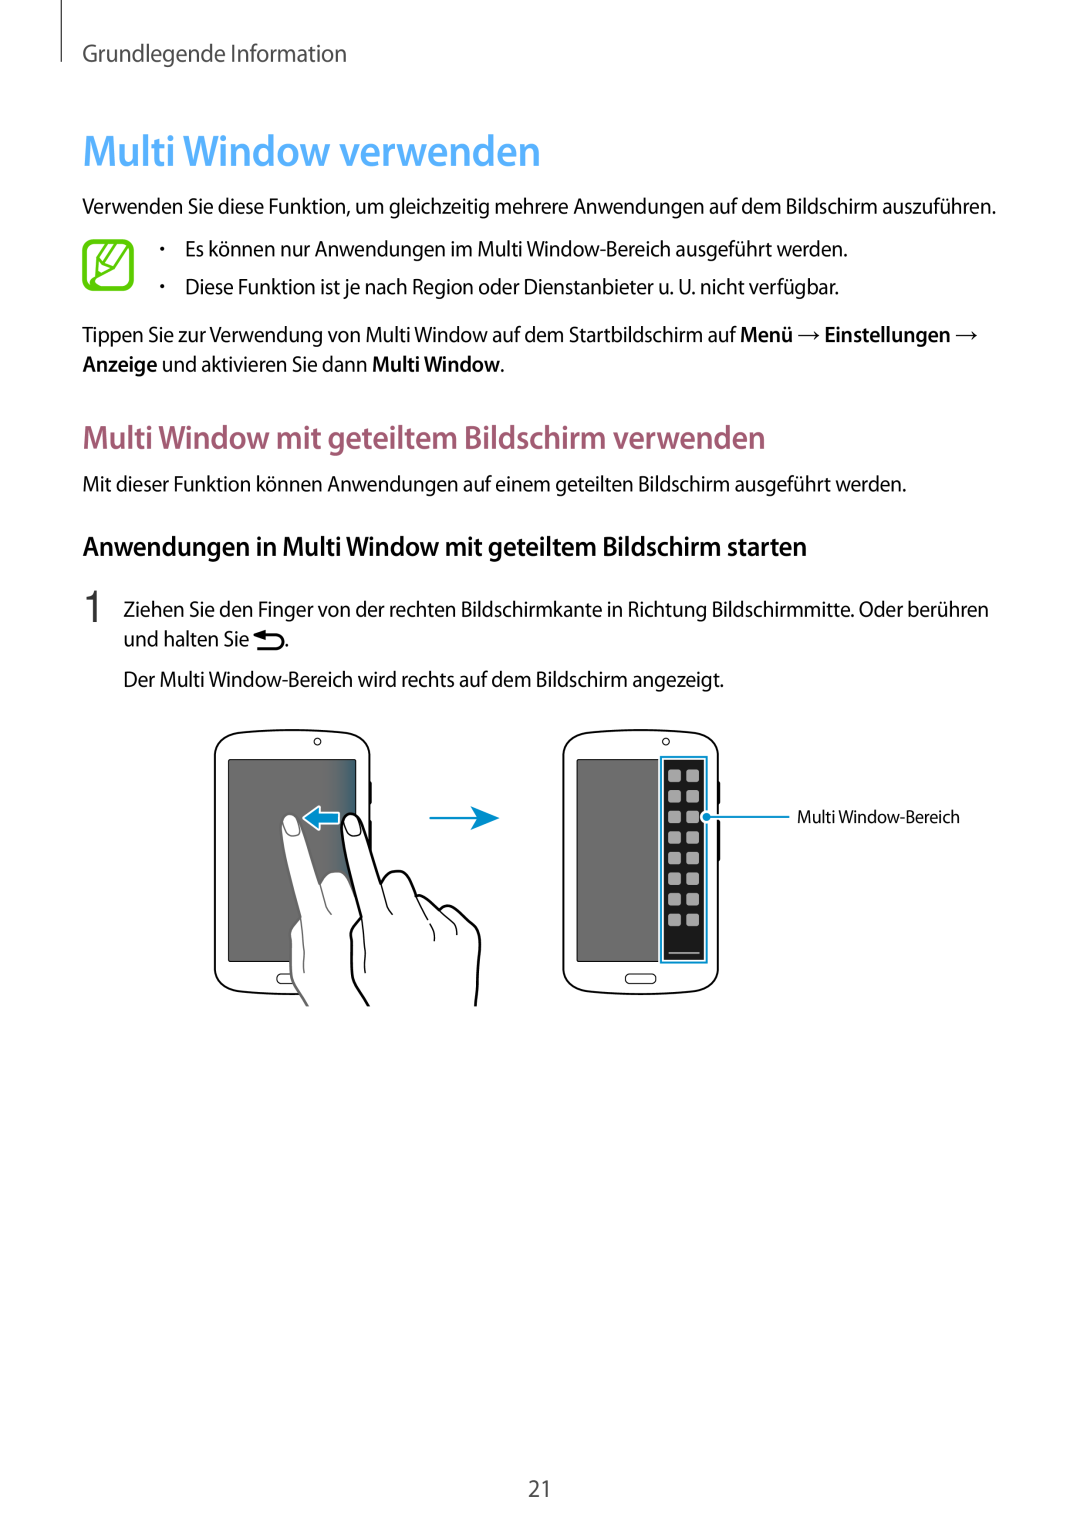 Samsung SM-T2100ZWAXEO Multi Window verwenden, Multi Window mit geteiltem Bildschirm verwenden, Grundlegende Information 